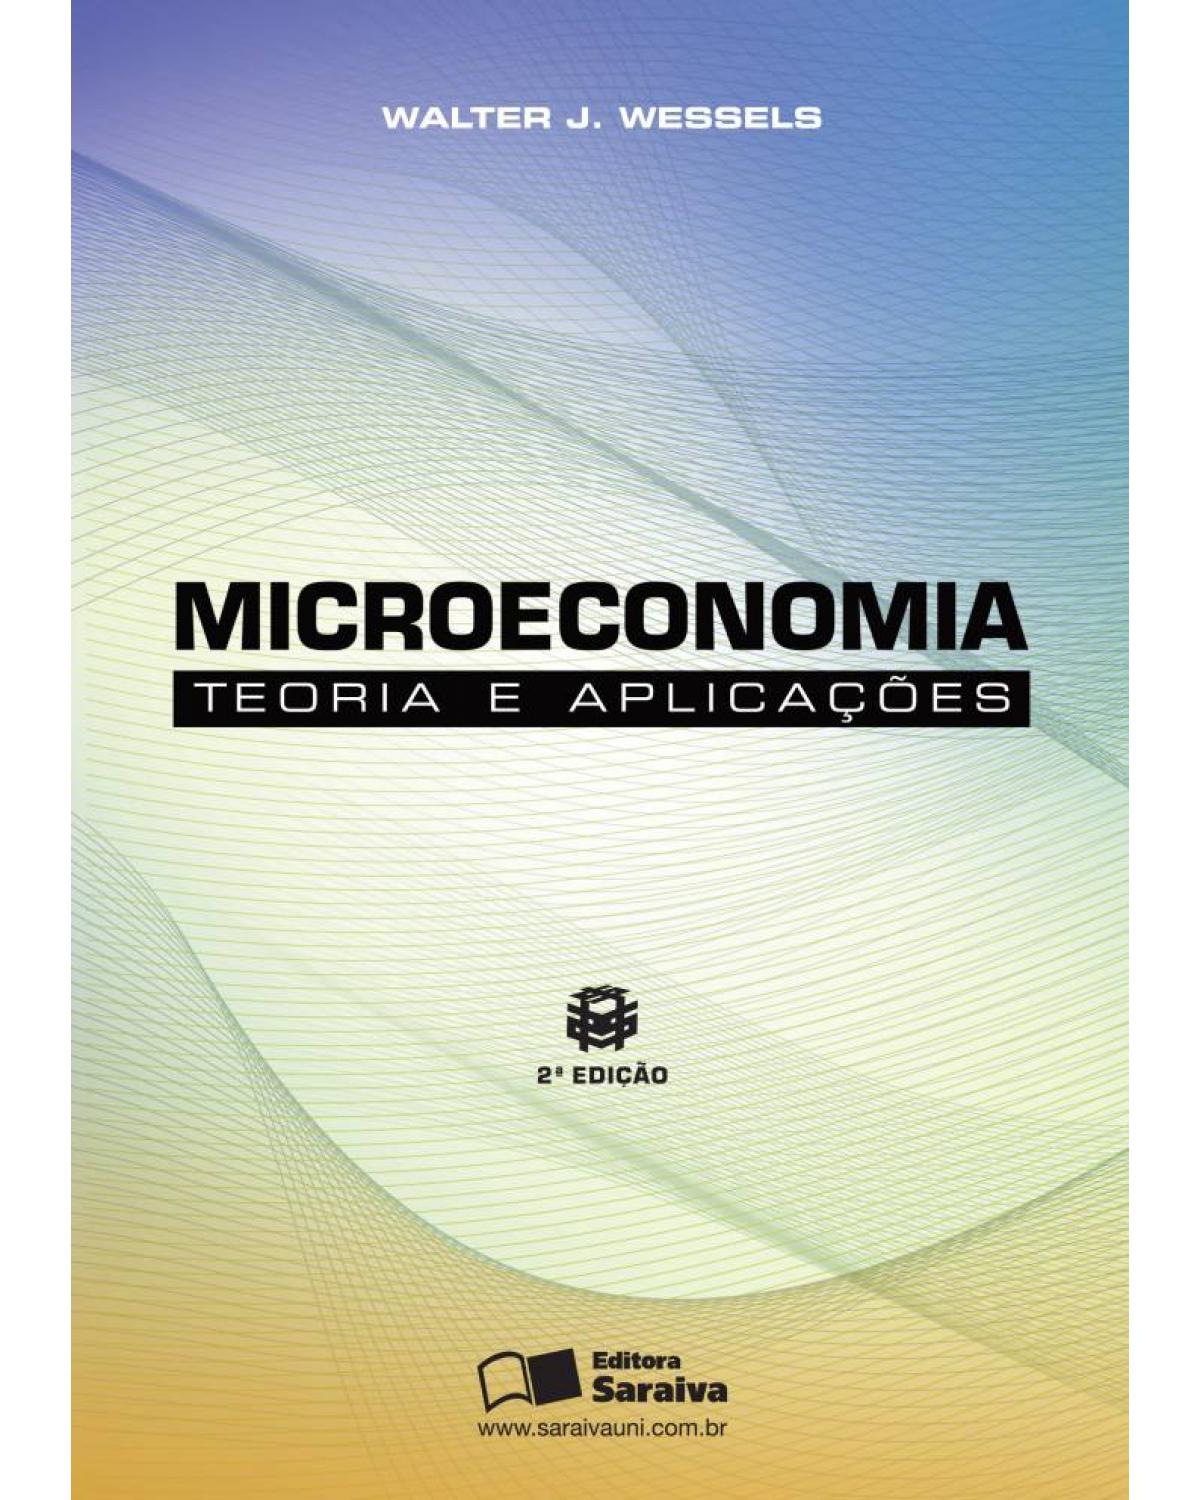 Microeconomia - teoria e aplicações - 2ª Edição | 2010